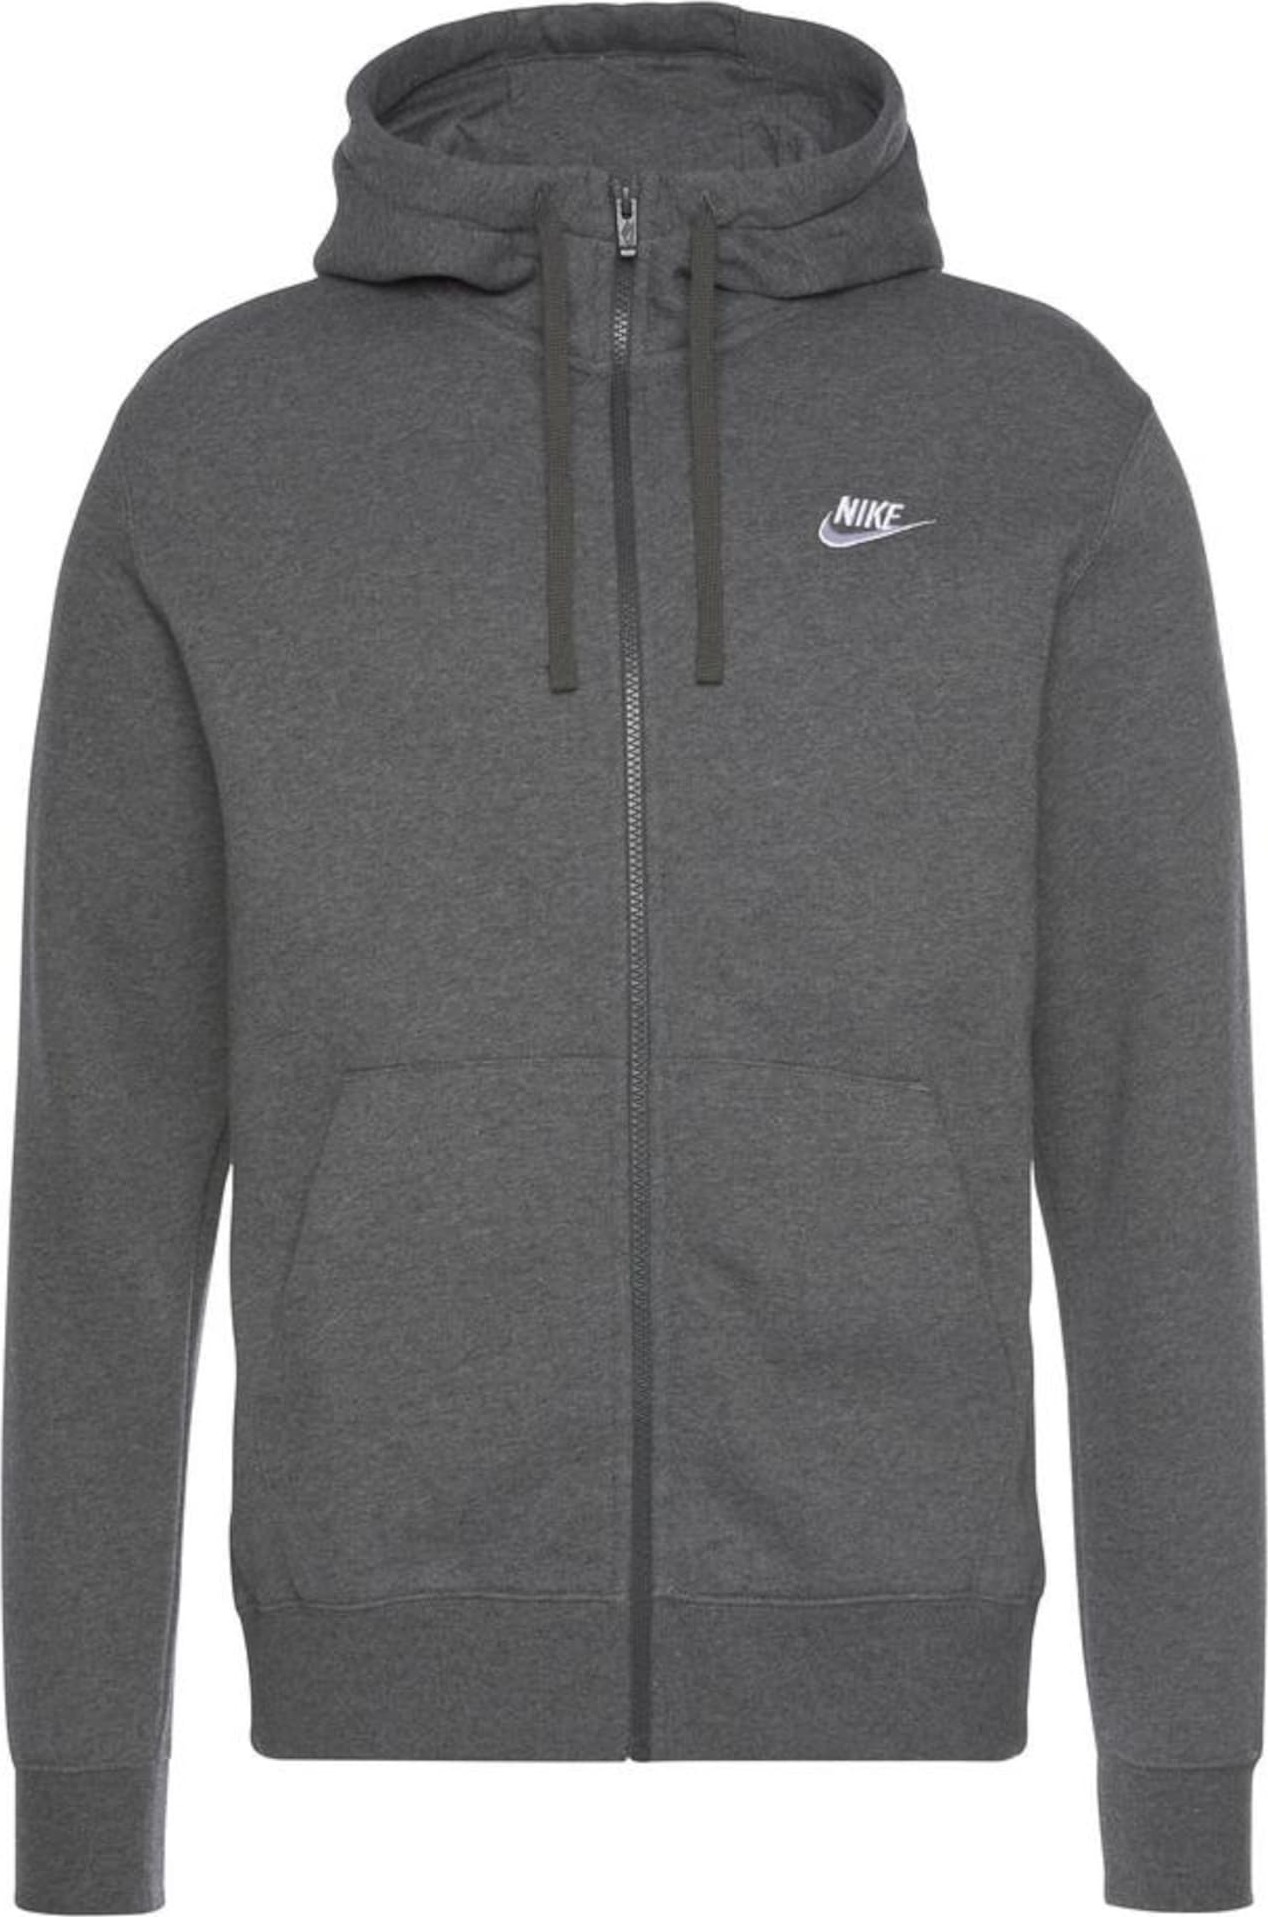 Nike Sportswear Mikina s kapucí tmavě šedá / bílá